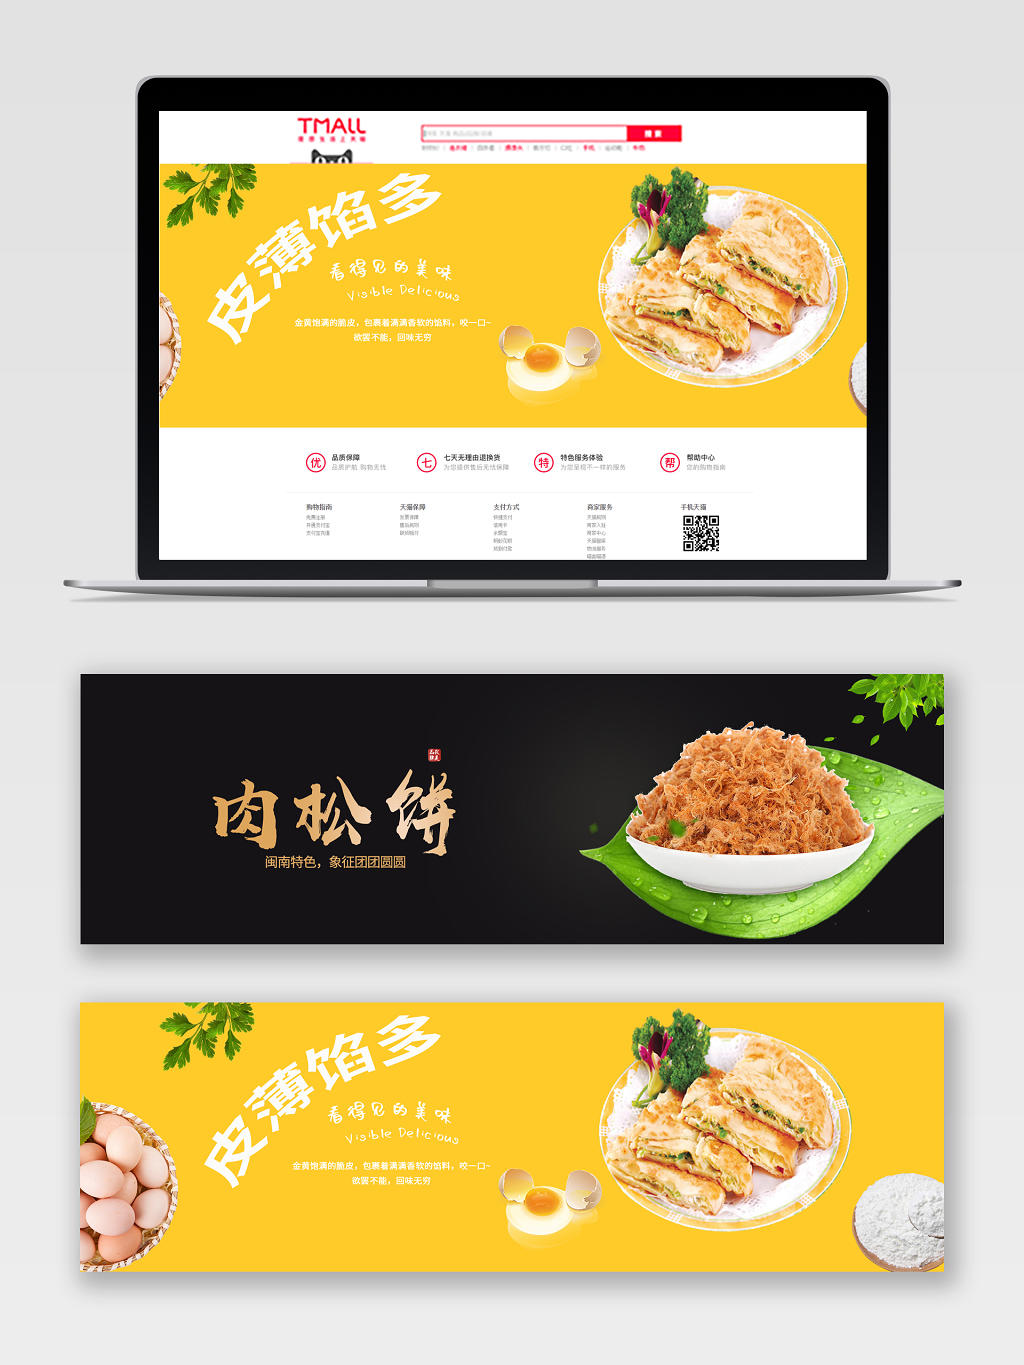 纯色背景食品零食饼干肉松电商banner海报设计